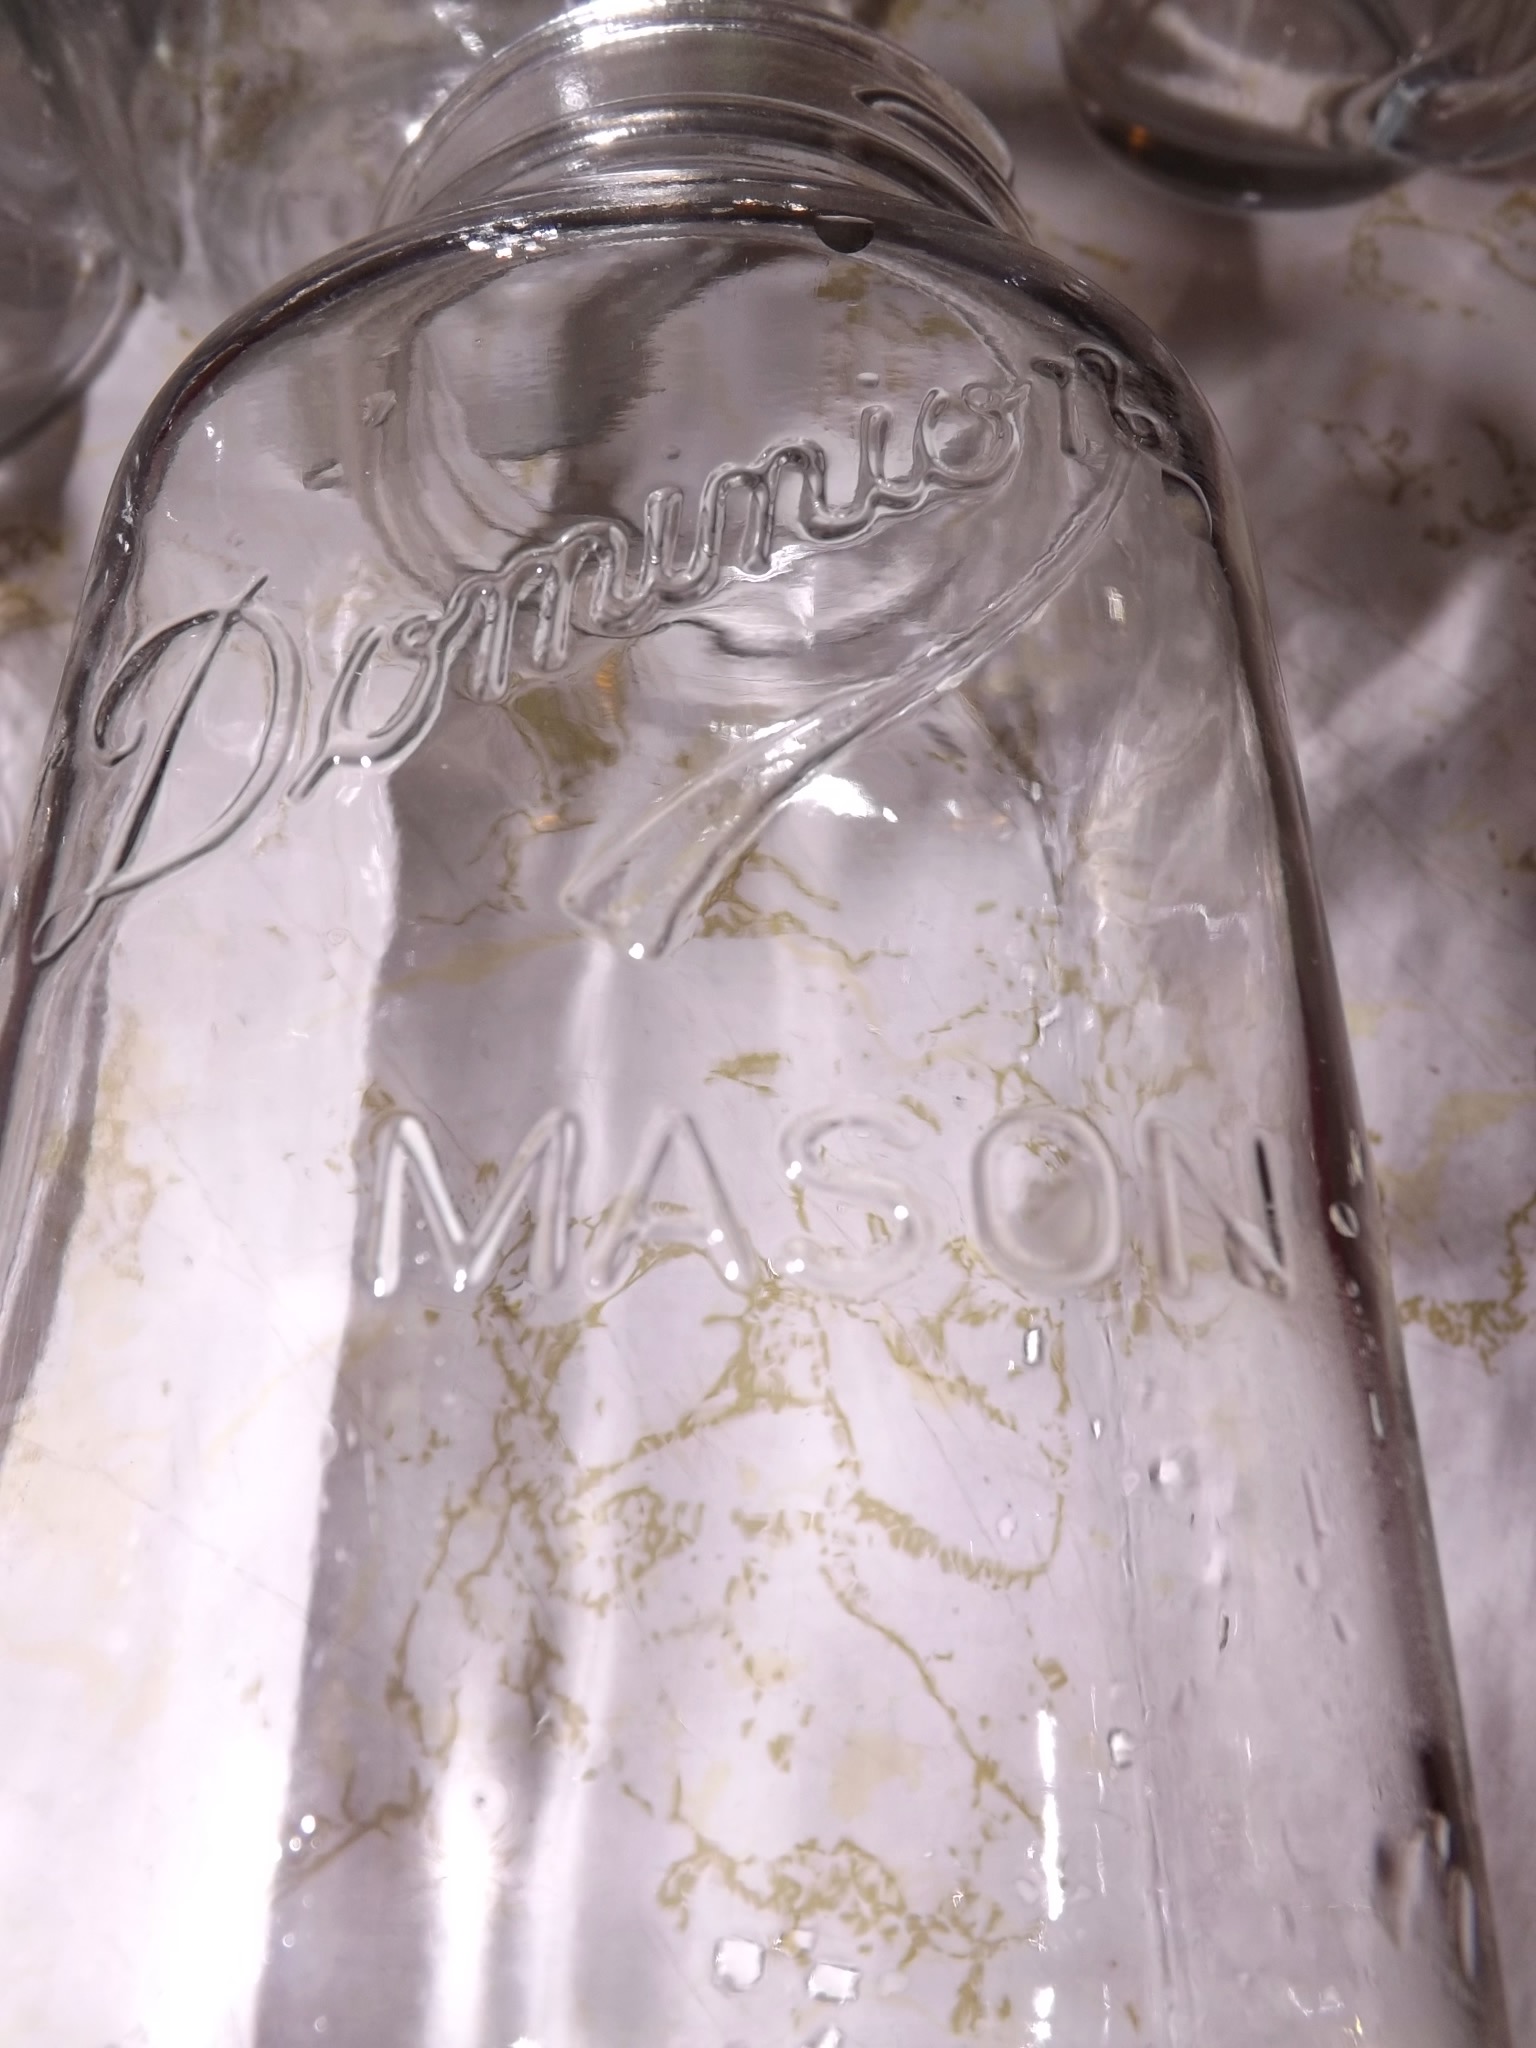 Dominion Mason jar.